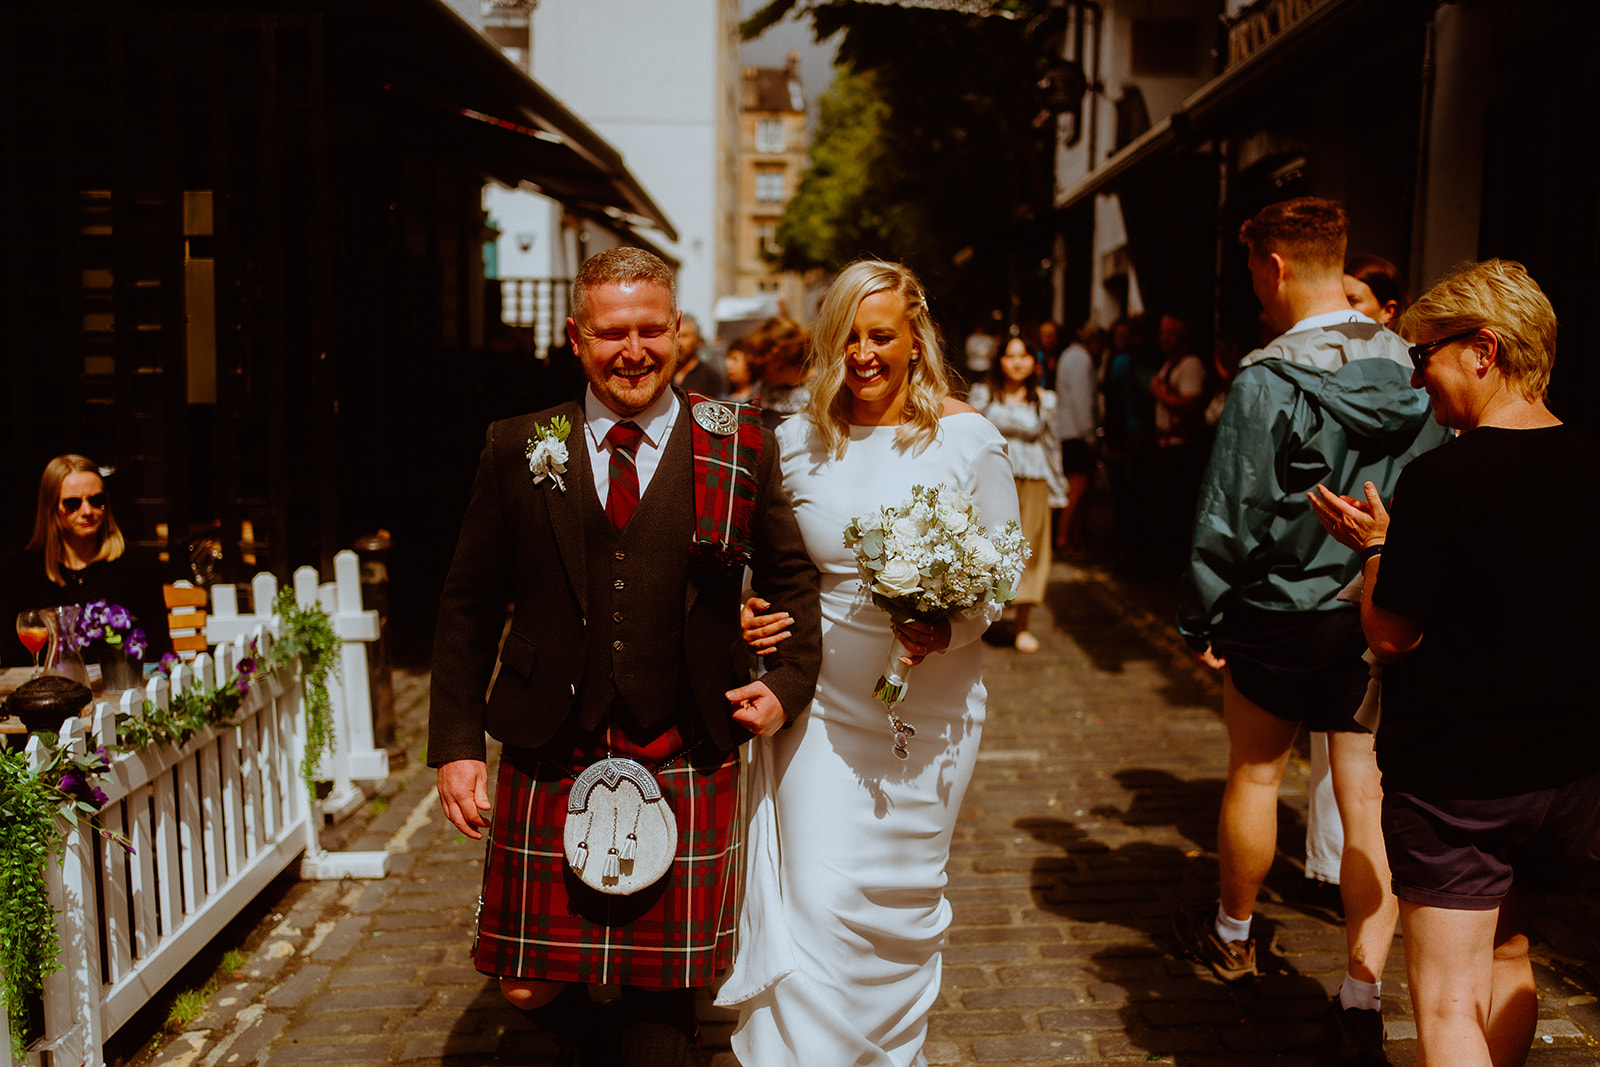 Wedding couple walking through Ashton Lane, Glasgow.